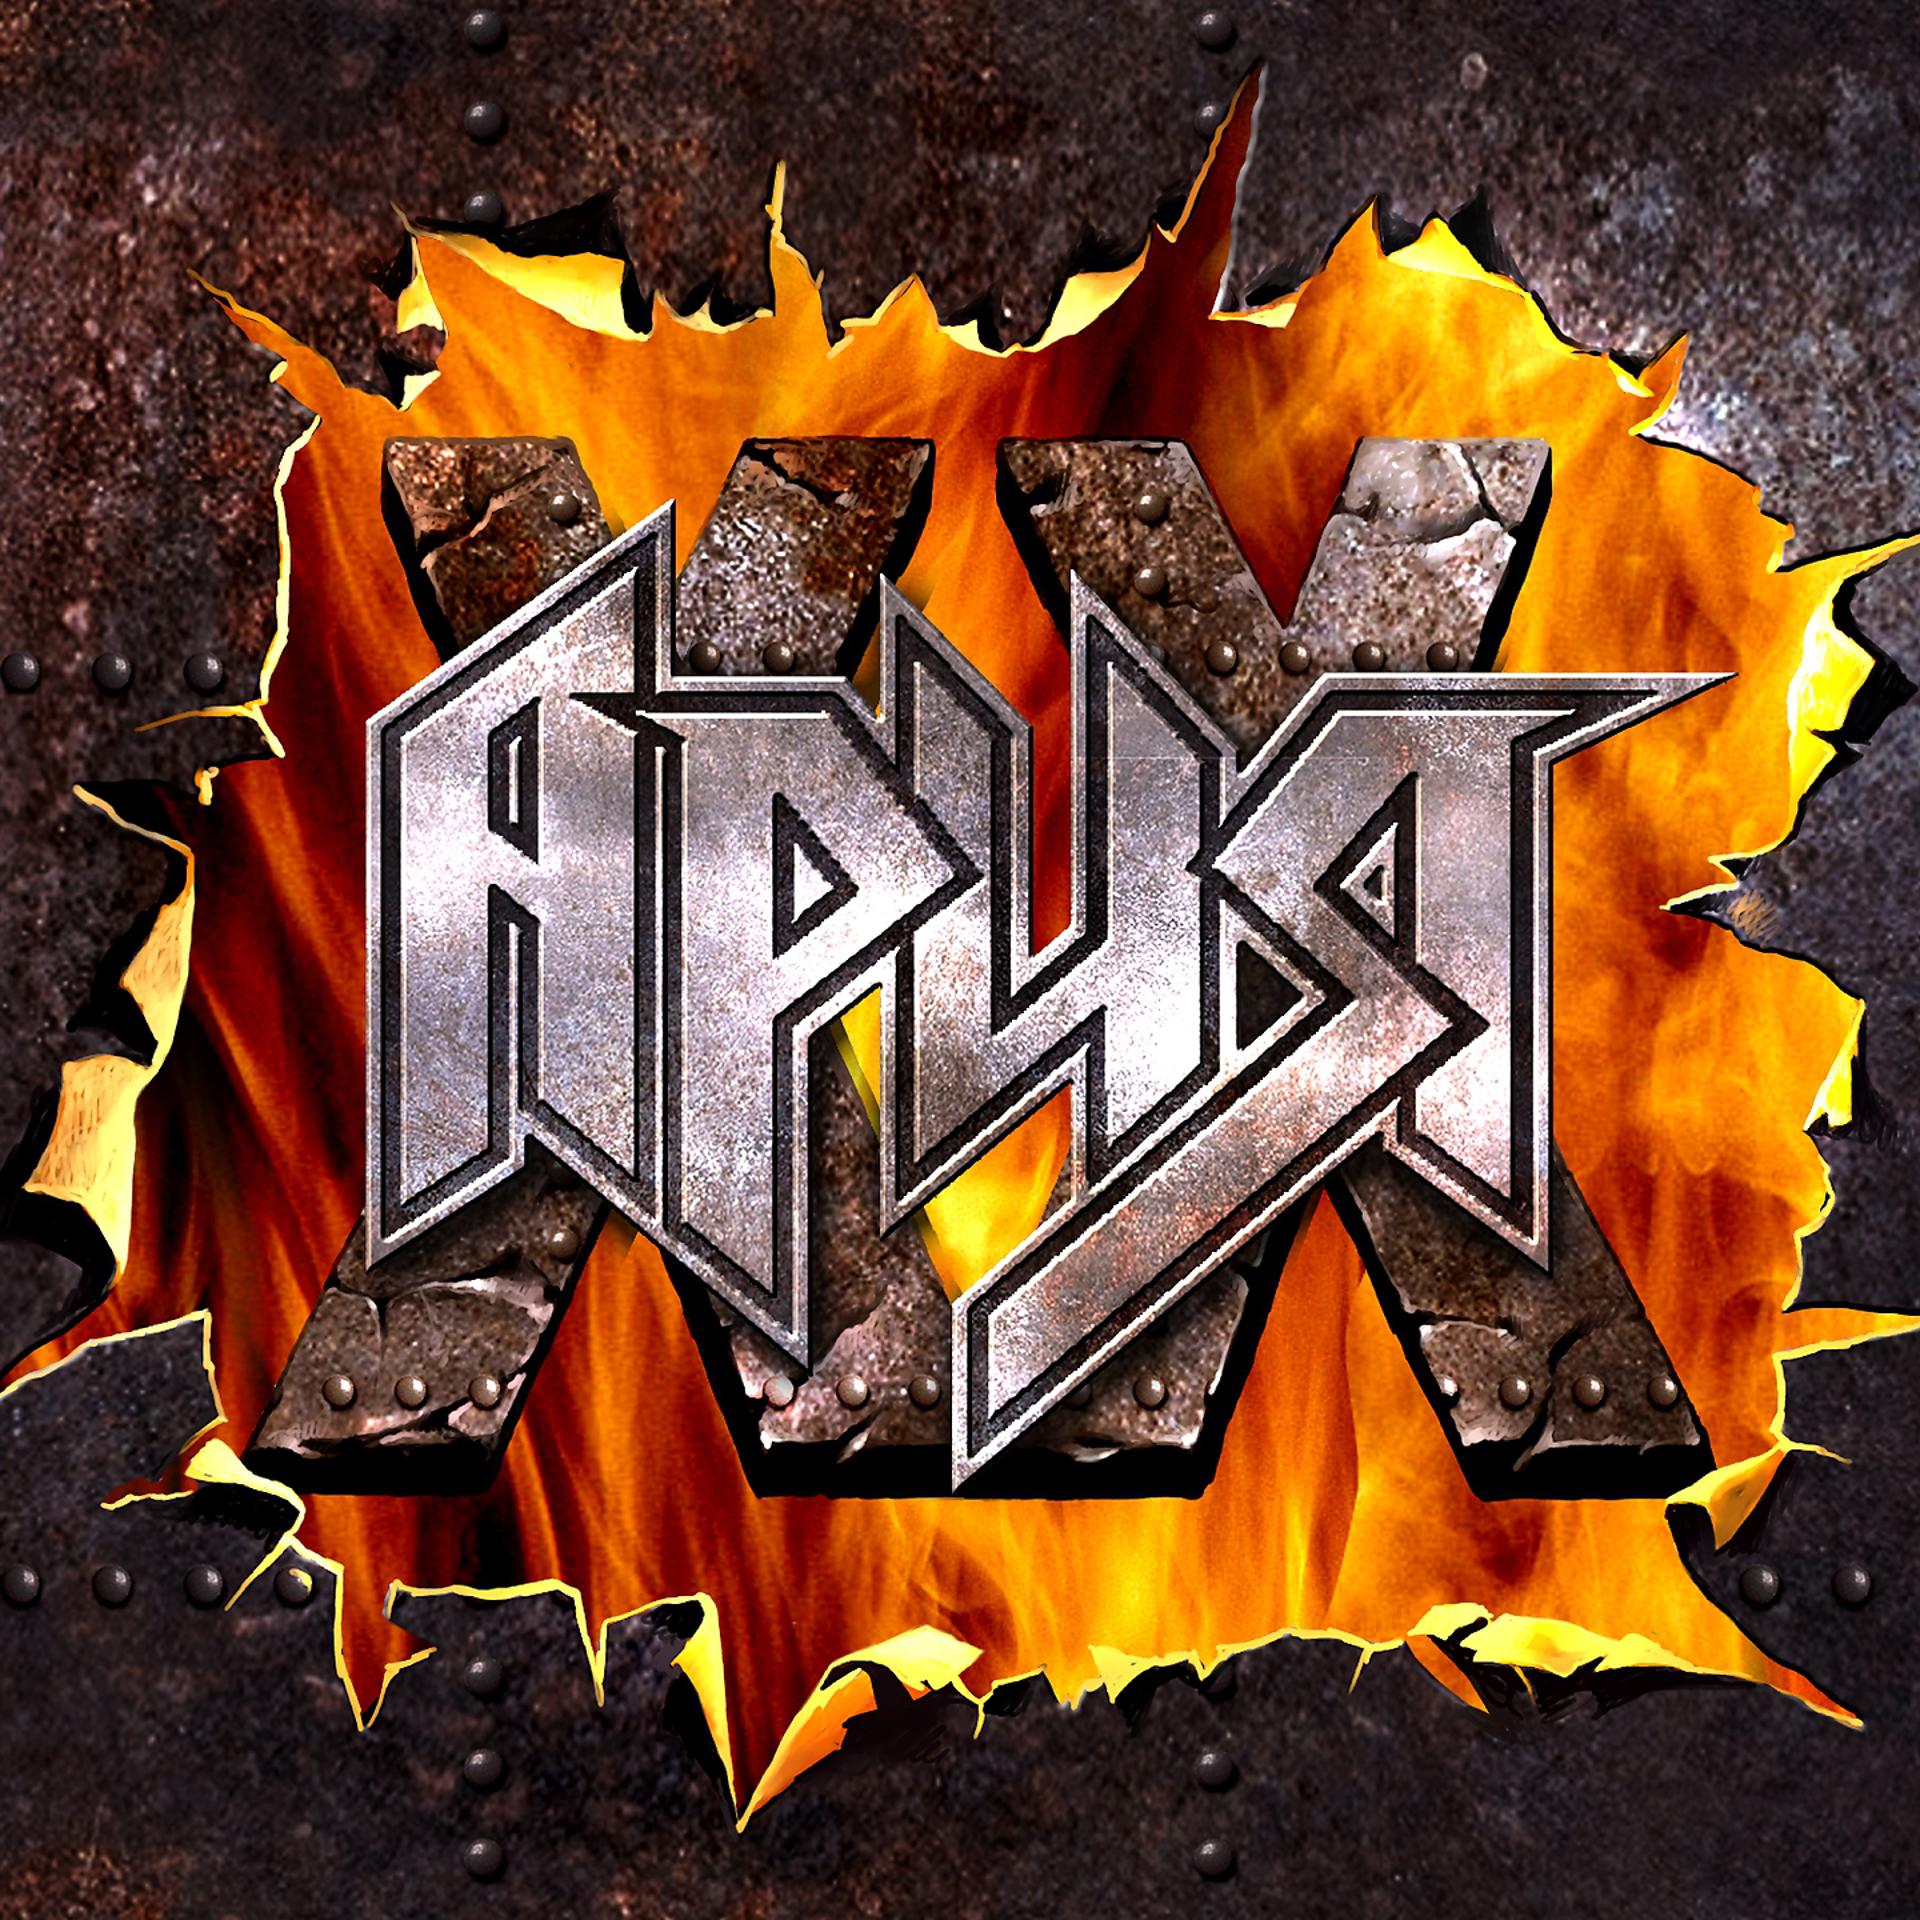 Ария группа 2021. Ария XX лет 2021. Ария - XX лет (Live) - 2021. Логотип рок группы Ария.